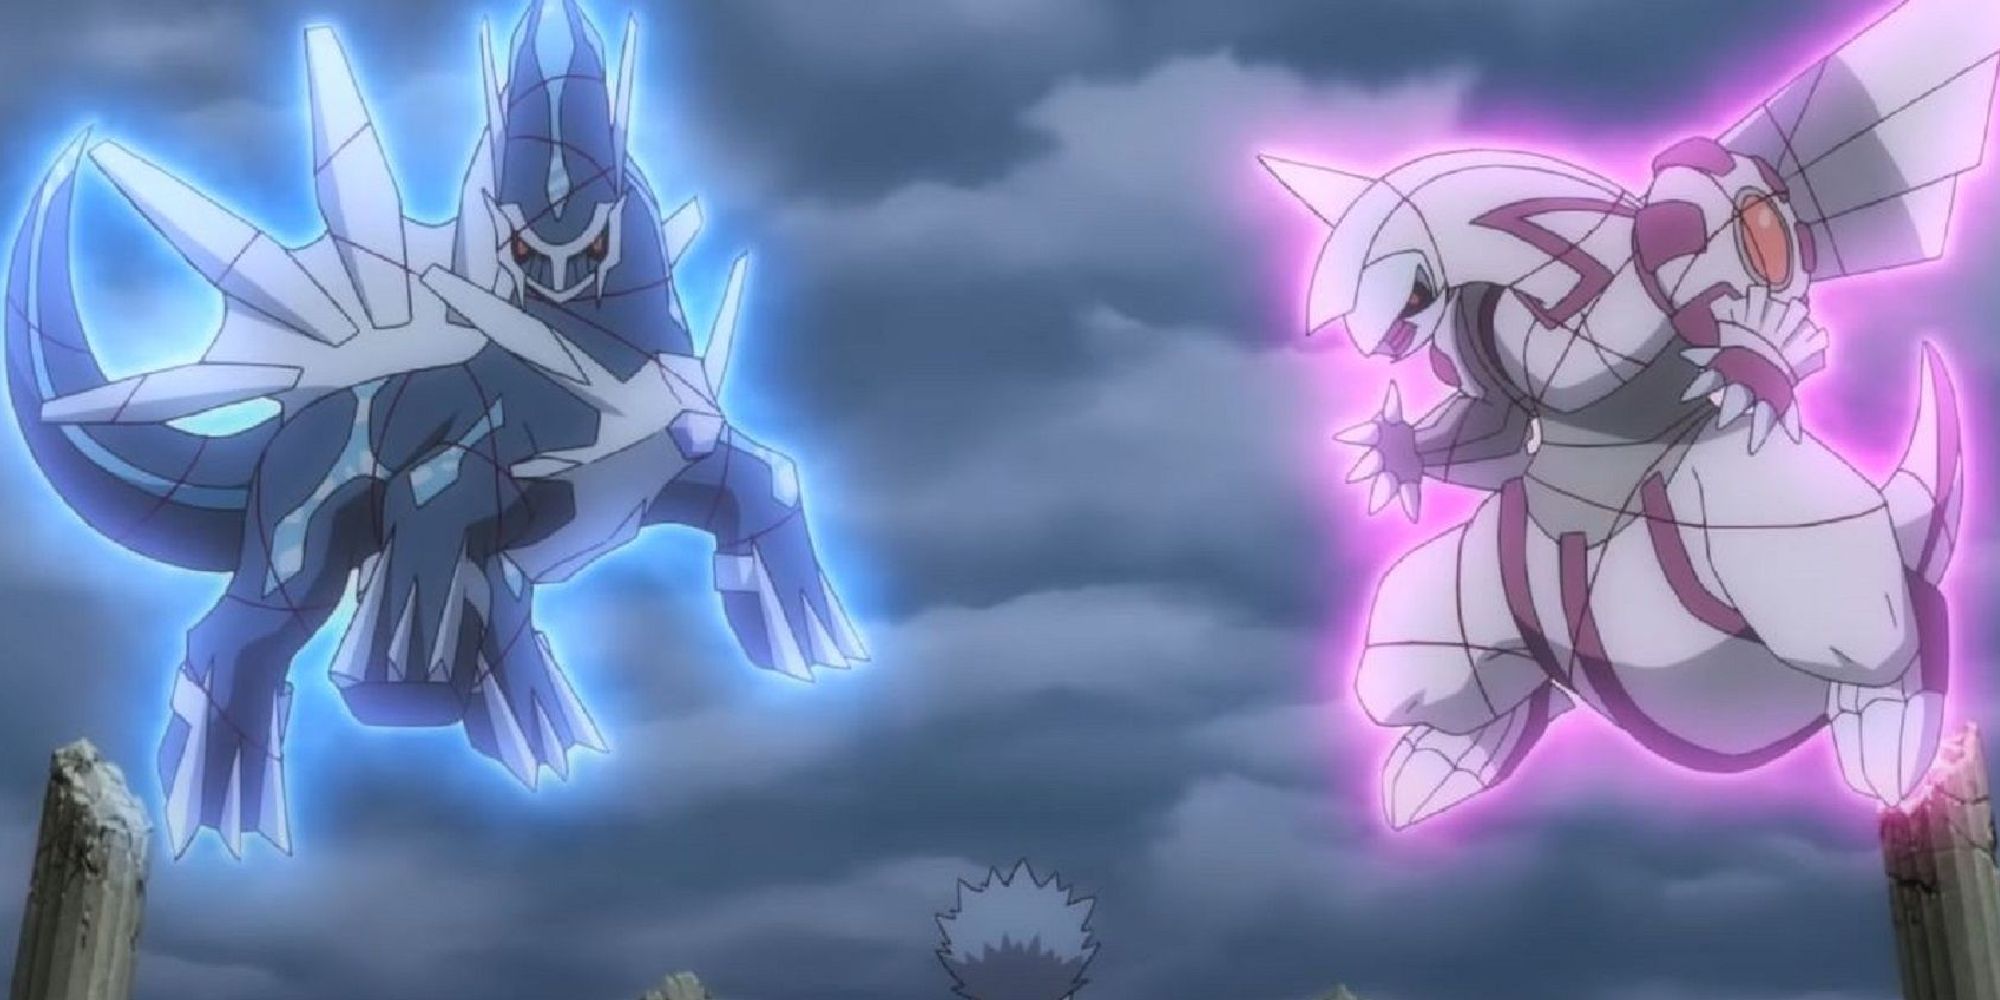 Диалга и Палкия телекинетически удерживаются в воздухе в аниме.